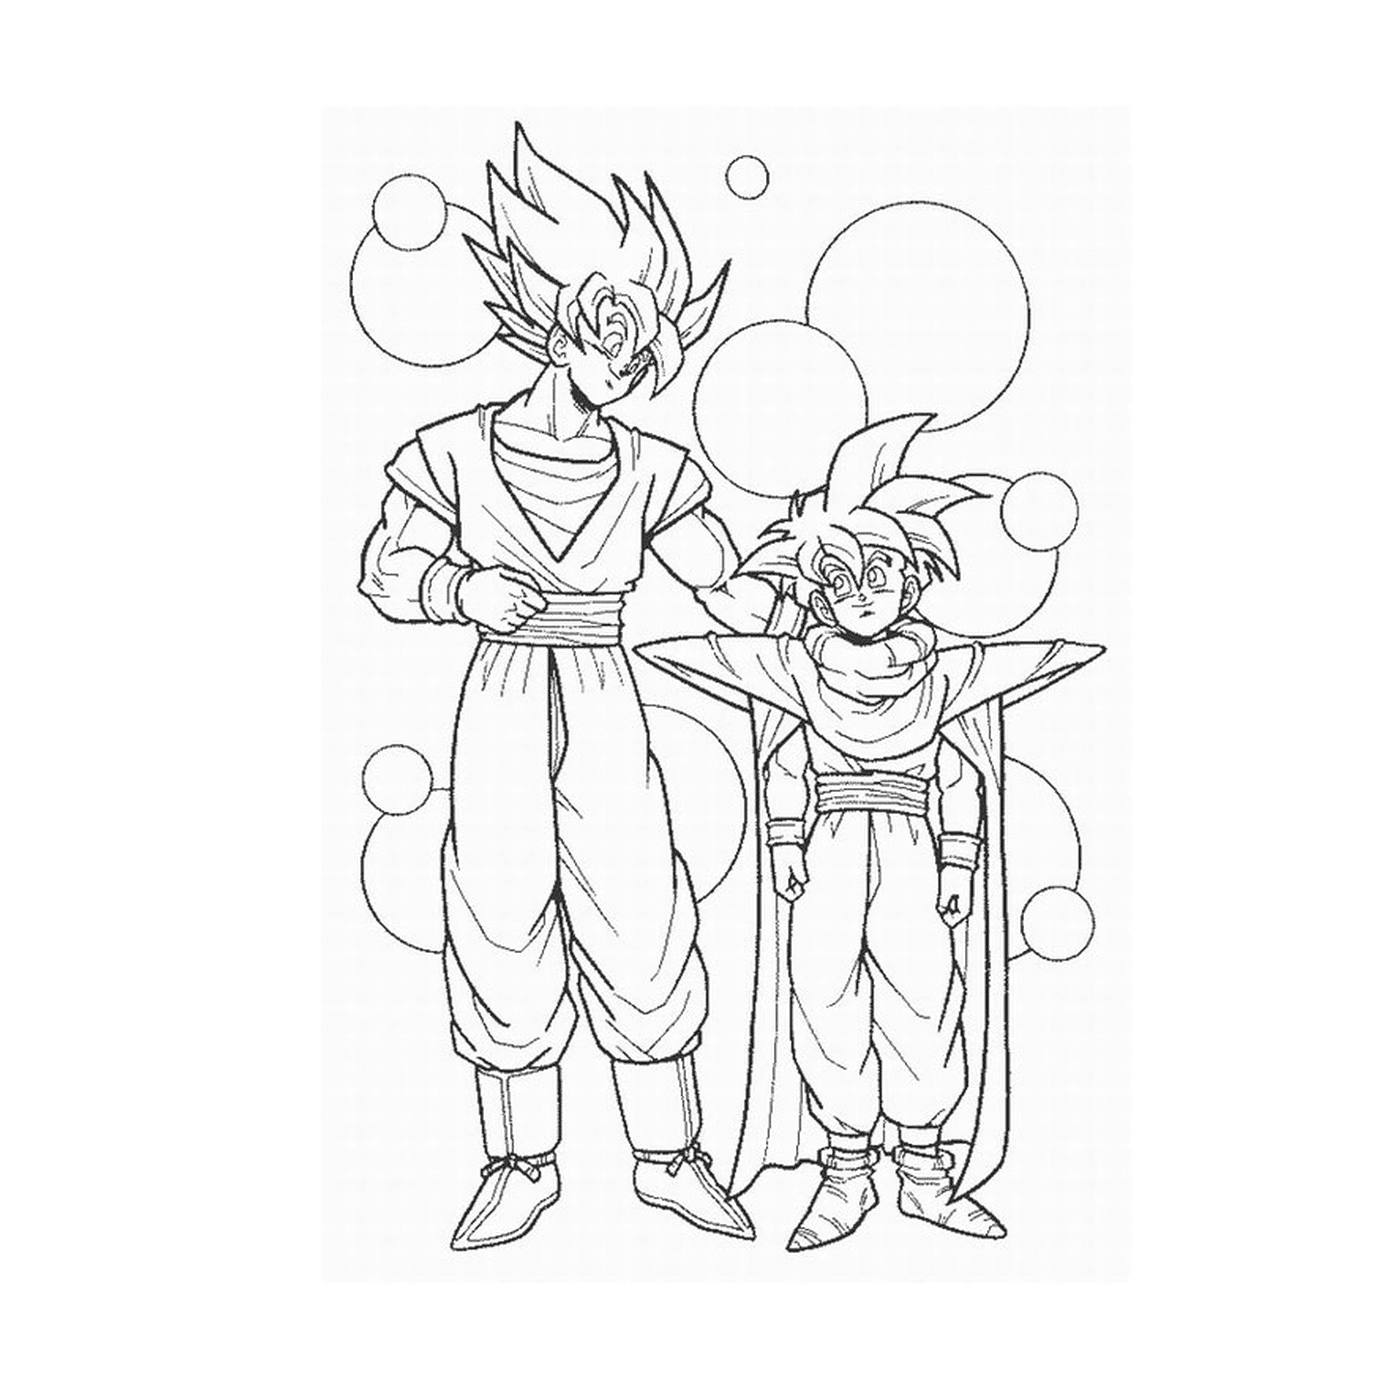  Goku e Vegeta, potenti guerrieri 